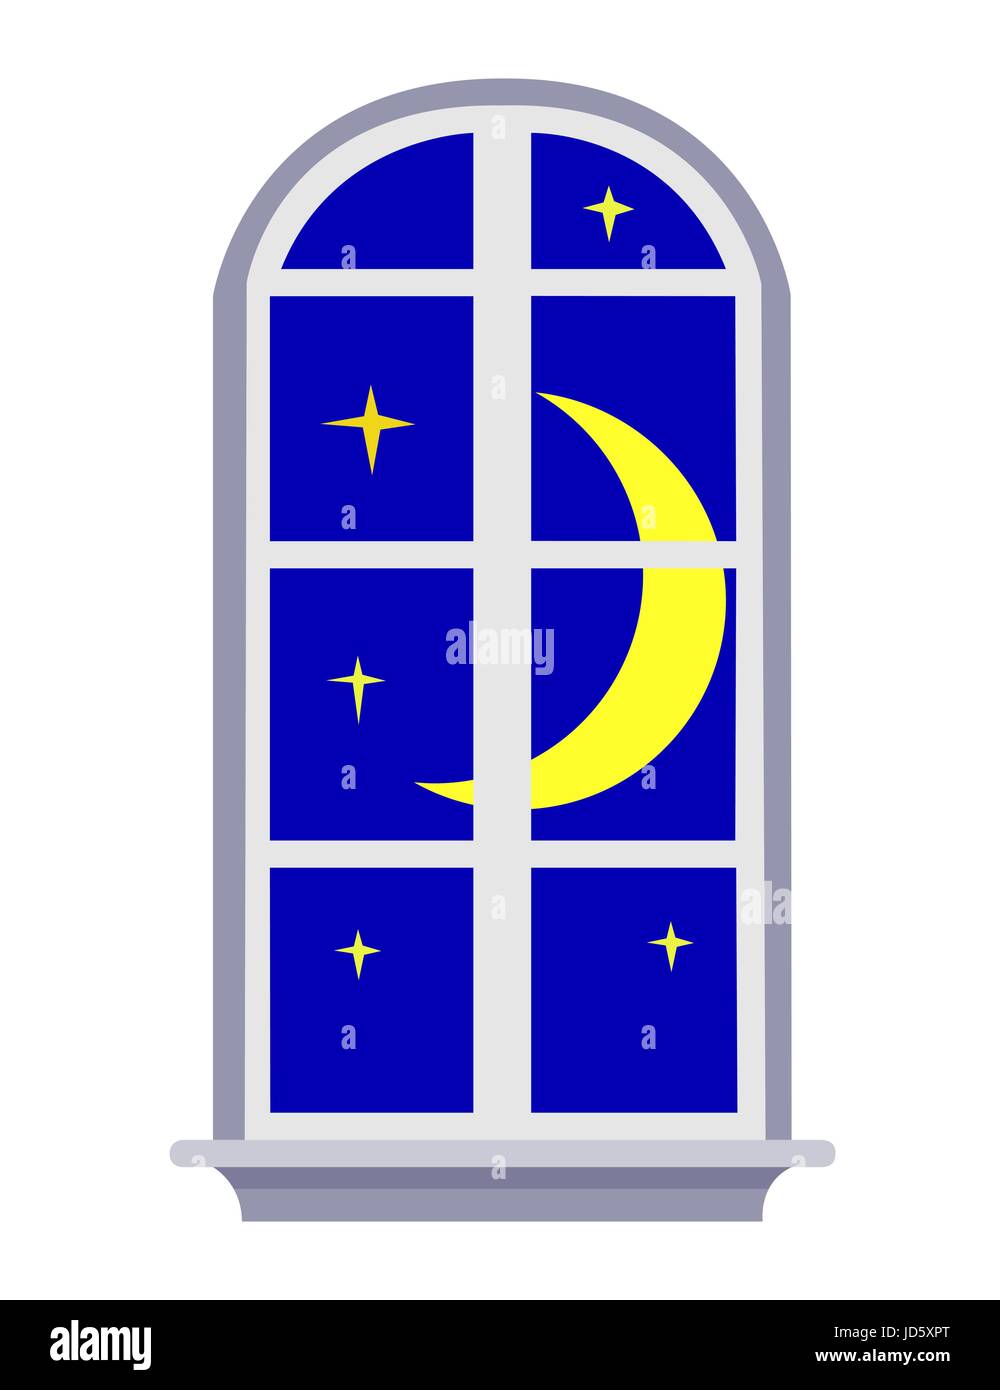 Vektor-Bild eines Nacht-Fensters der blaue Himmel mit Mond und Sternen, isoliert auf weiss Stock Vektor